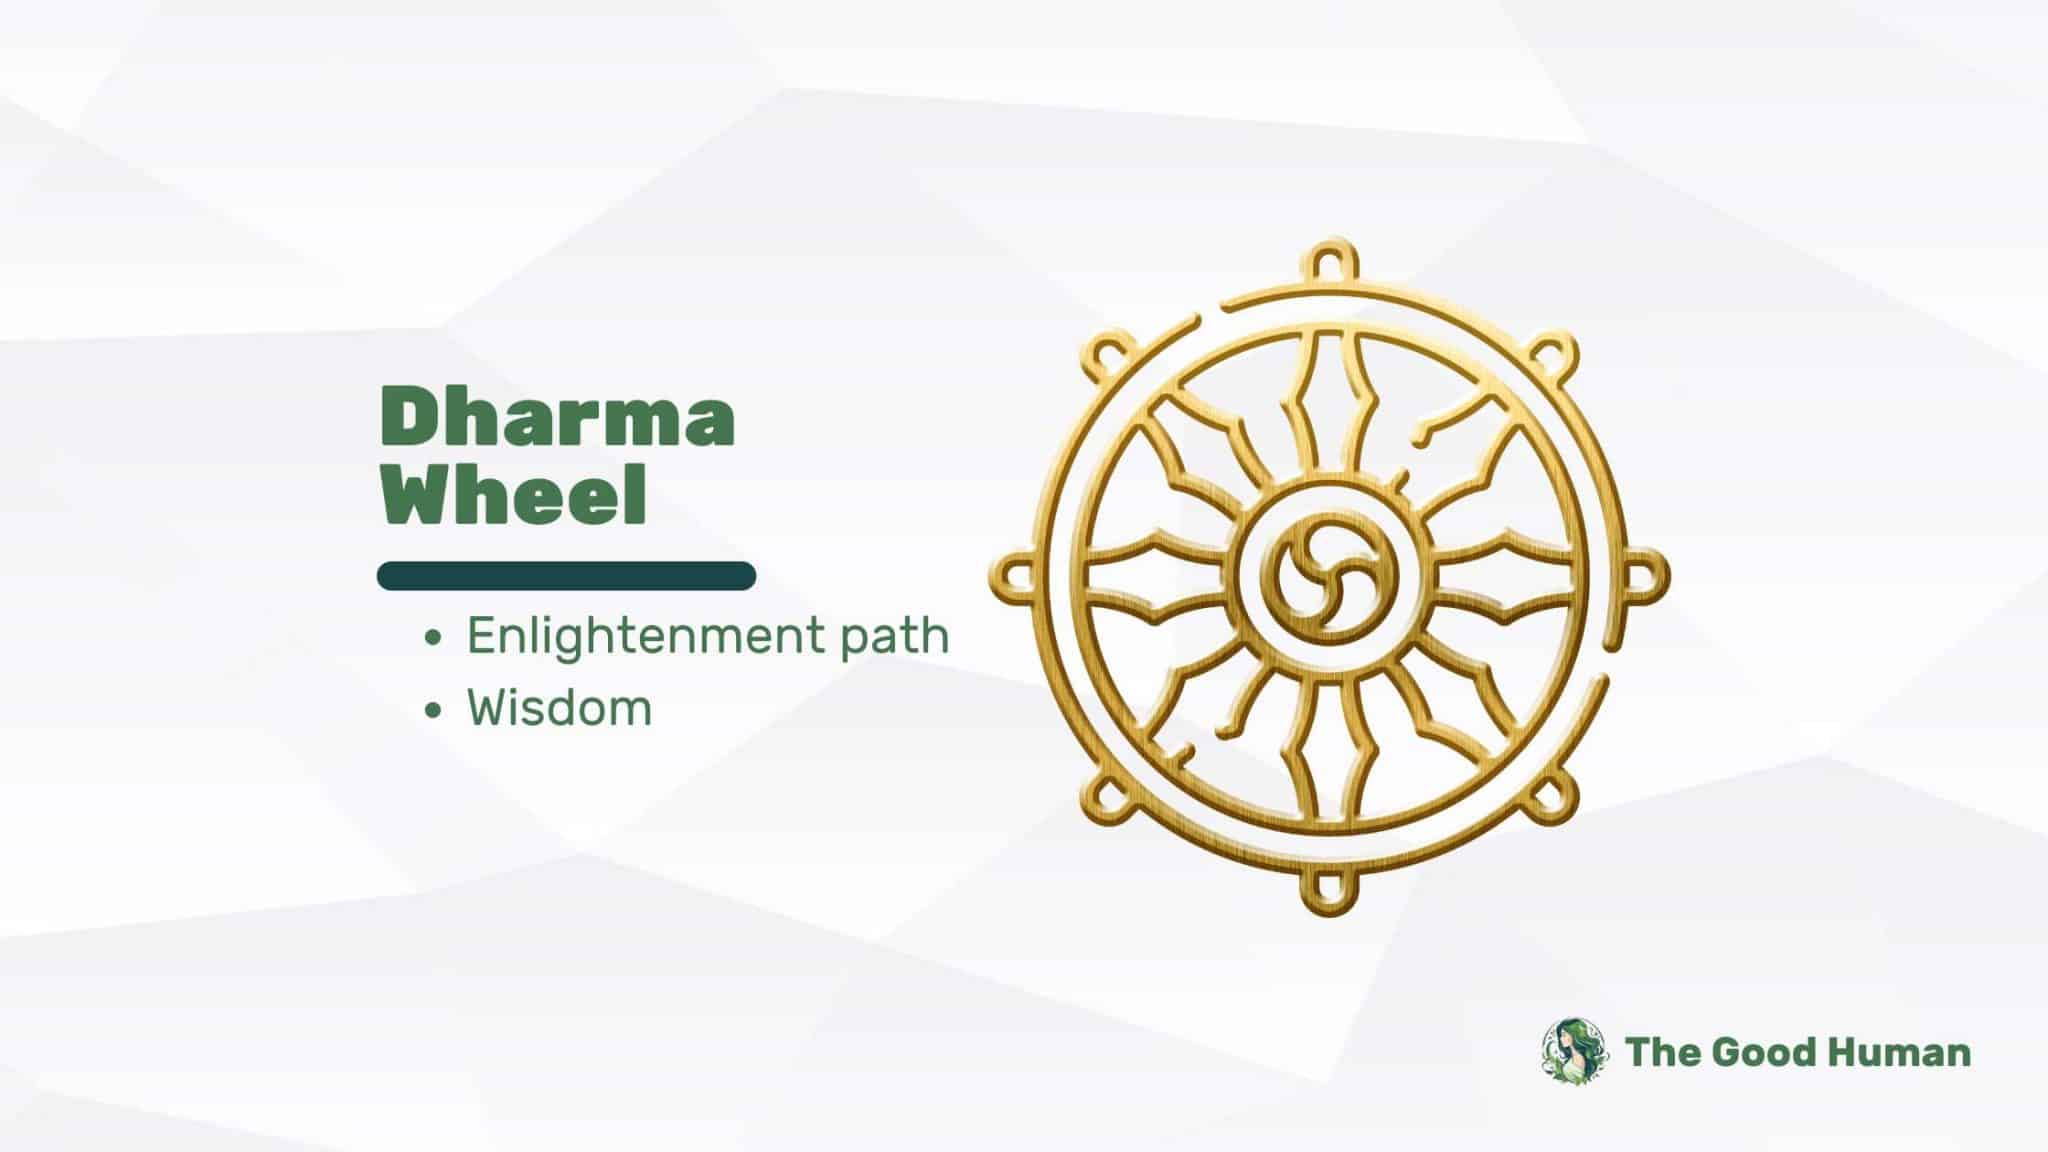 Dharma wheel symbol